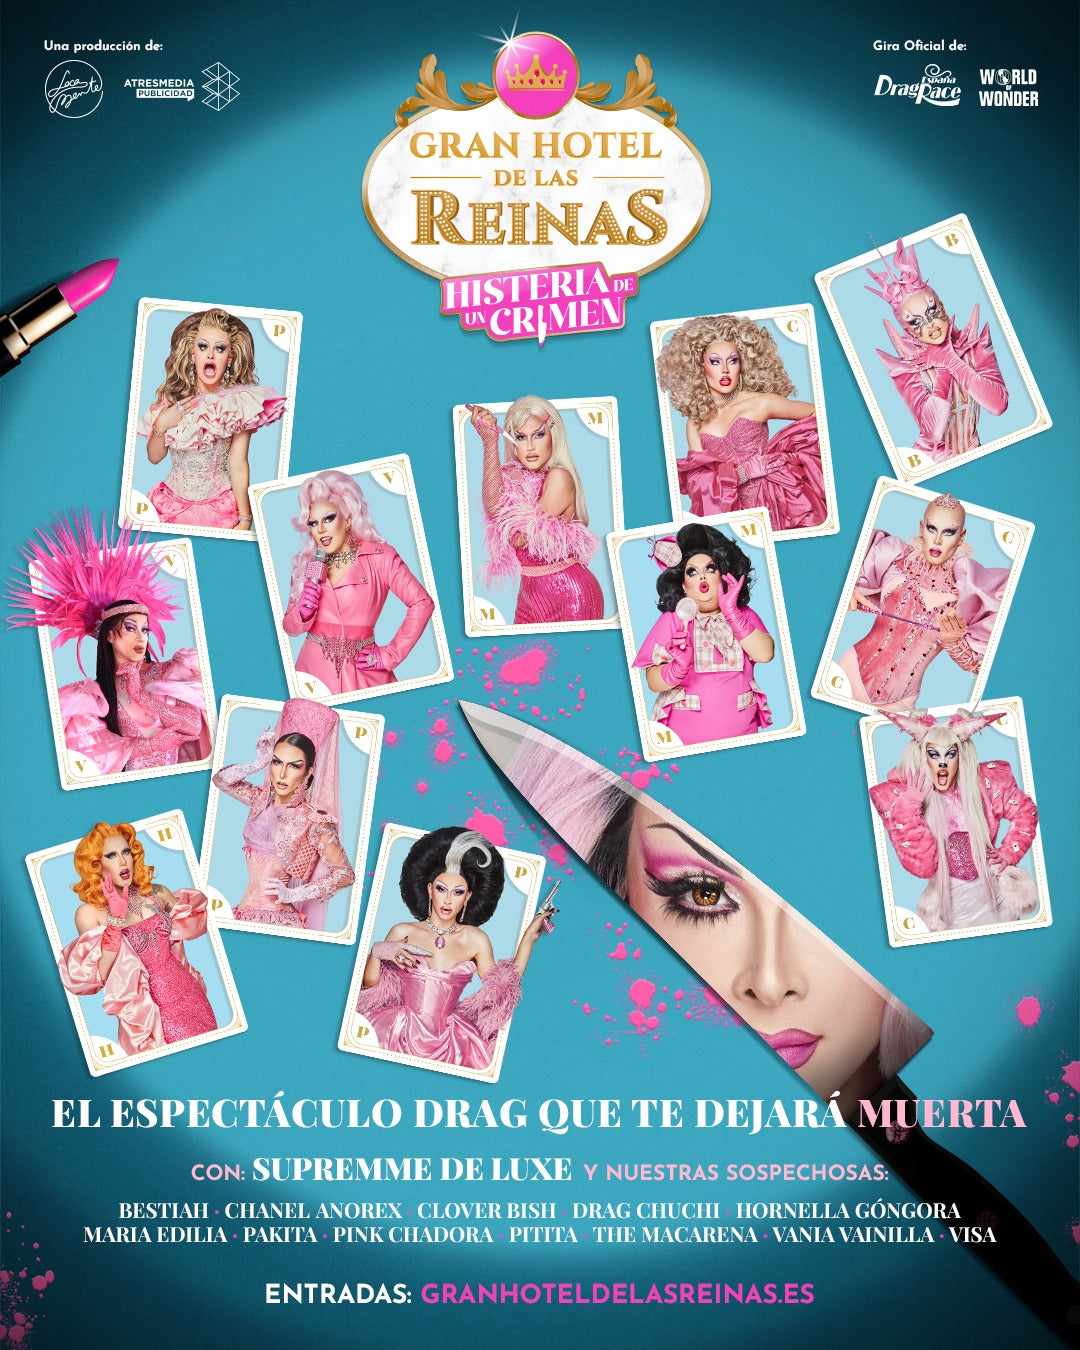 Poster oficial Gira Gran Hotel de las Reinas: Histeria de un crimen